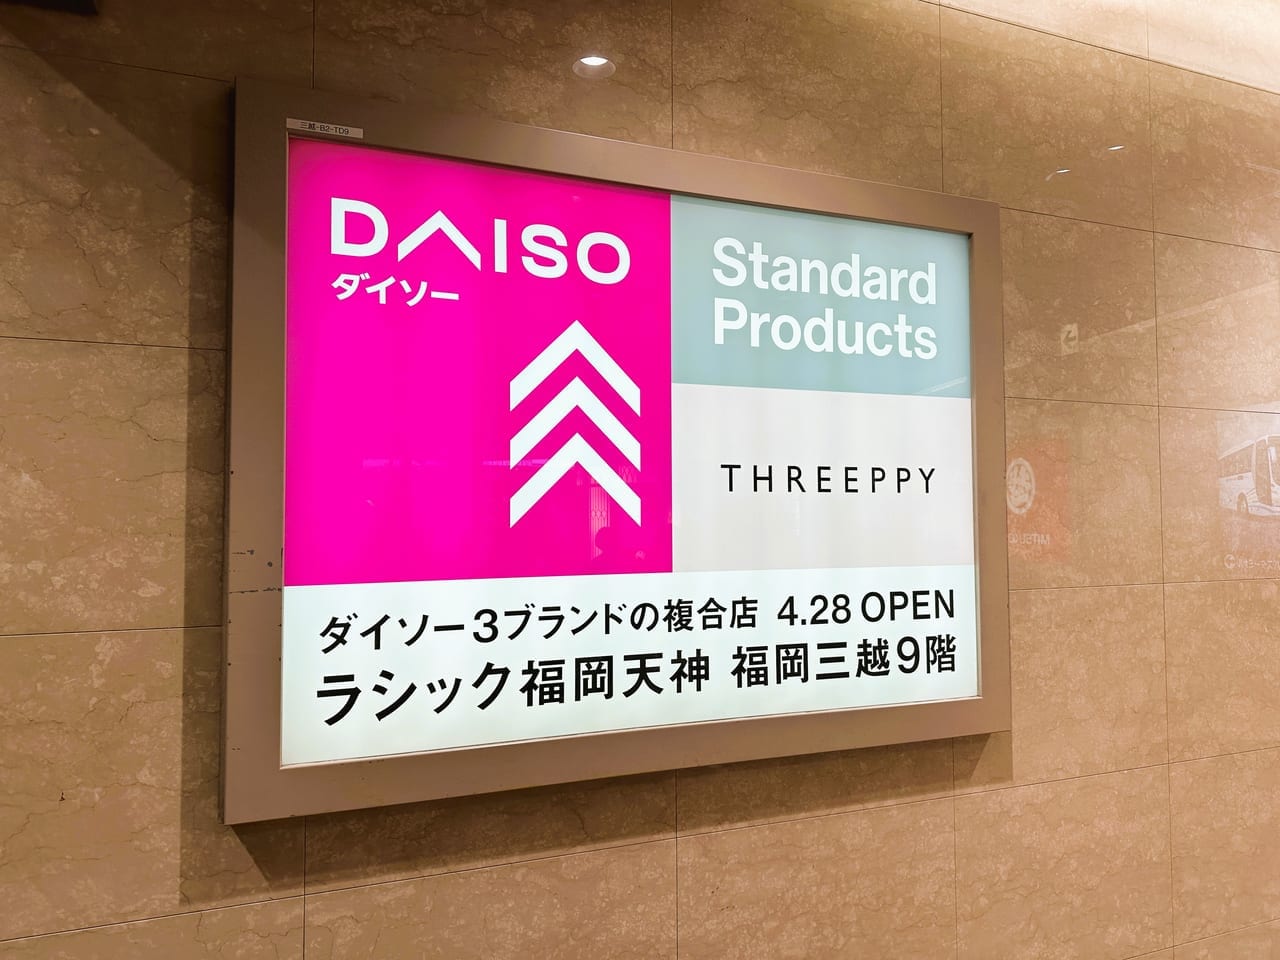 2023年4月28日 New Openです♪ DAISO、Standard Products、THREEPPYの３ブランド